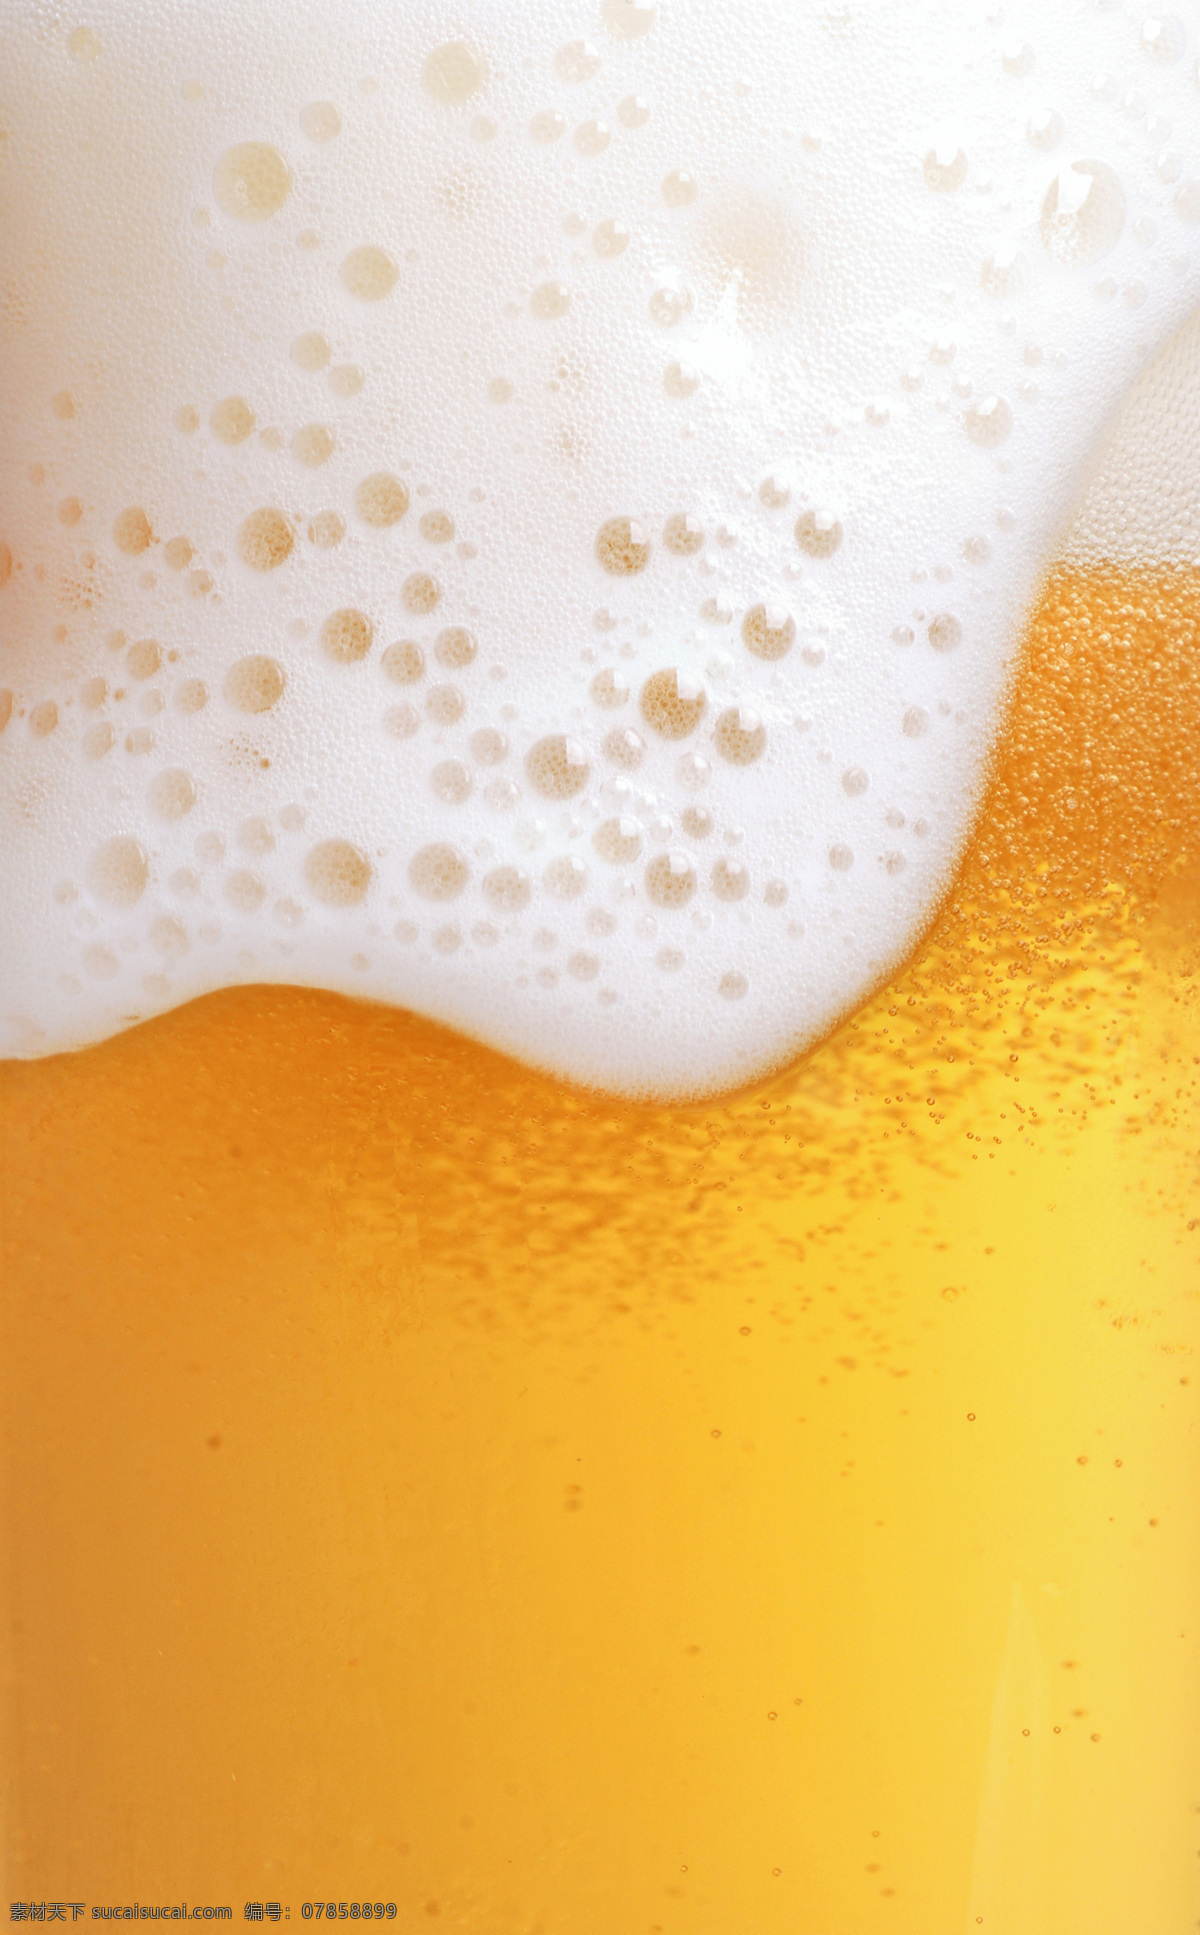 啤酒 泡沫 图 特写 酒 酒水 饮料 啤酒泡沫 扎啤 啤酒杯 啤酒广告 夏季饮料 餐饮 饮料酒水 餐饮美食 酒类图片